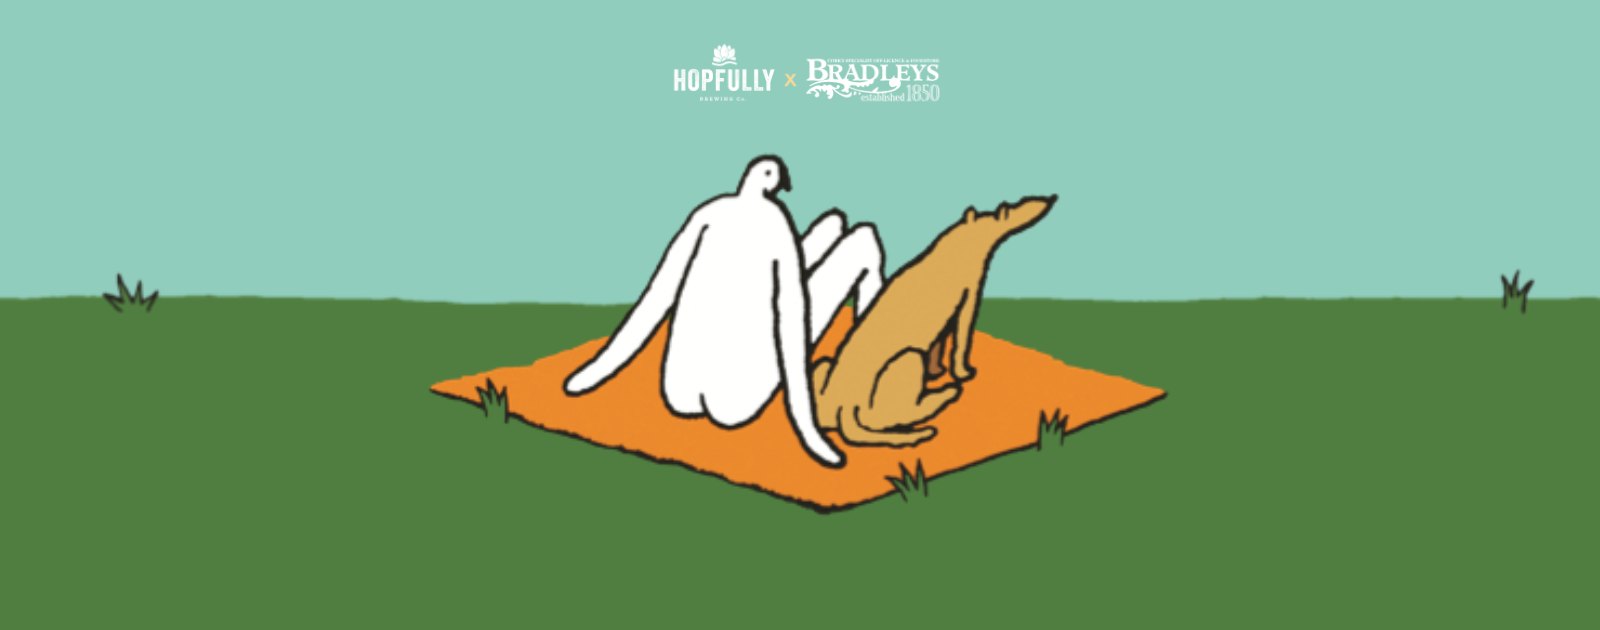 Hopfully & Bradleys - web banner 2